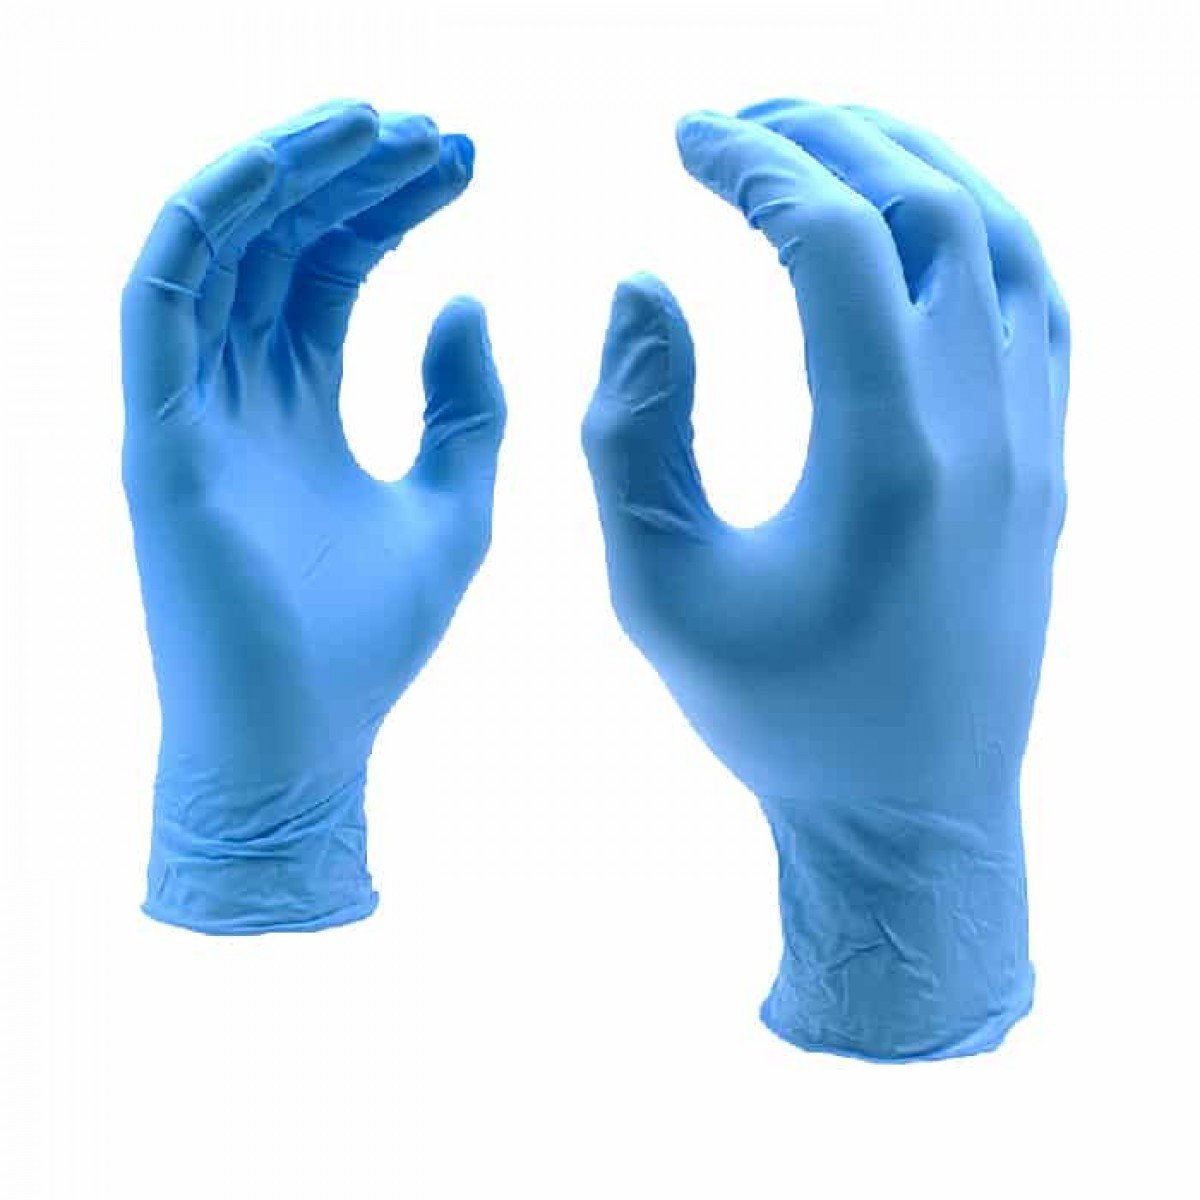 Noah Gloves - Blue Nitrile Gloves - Large